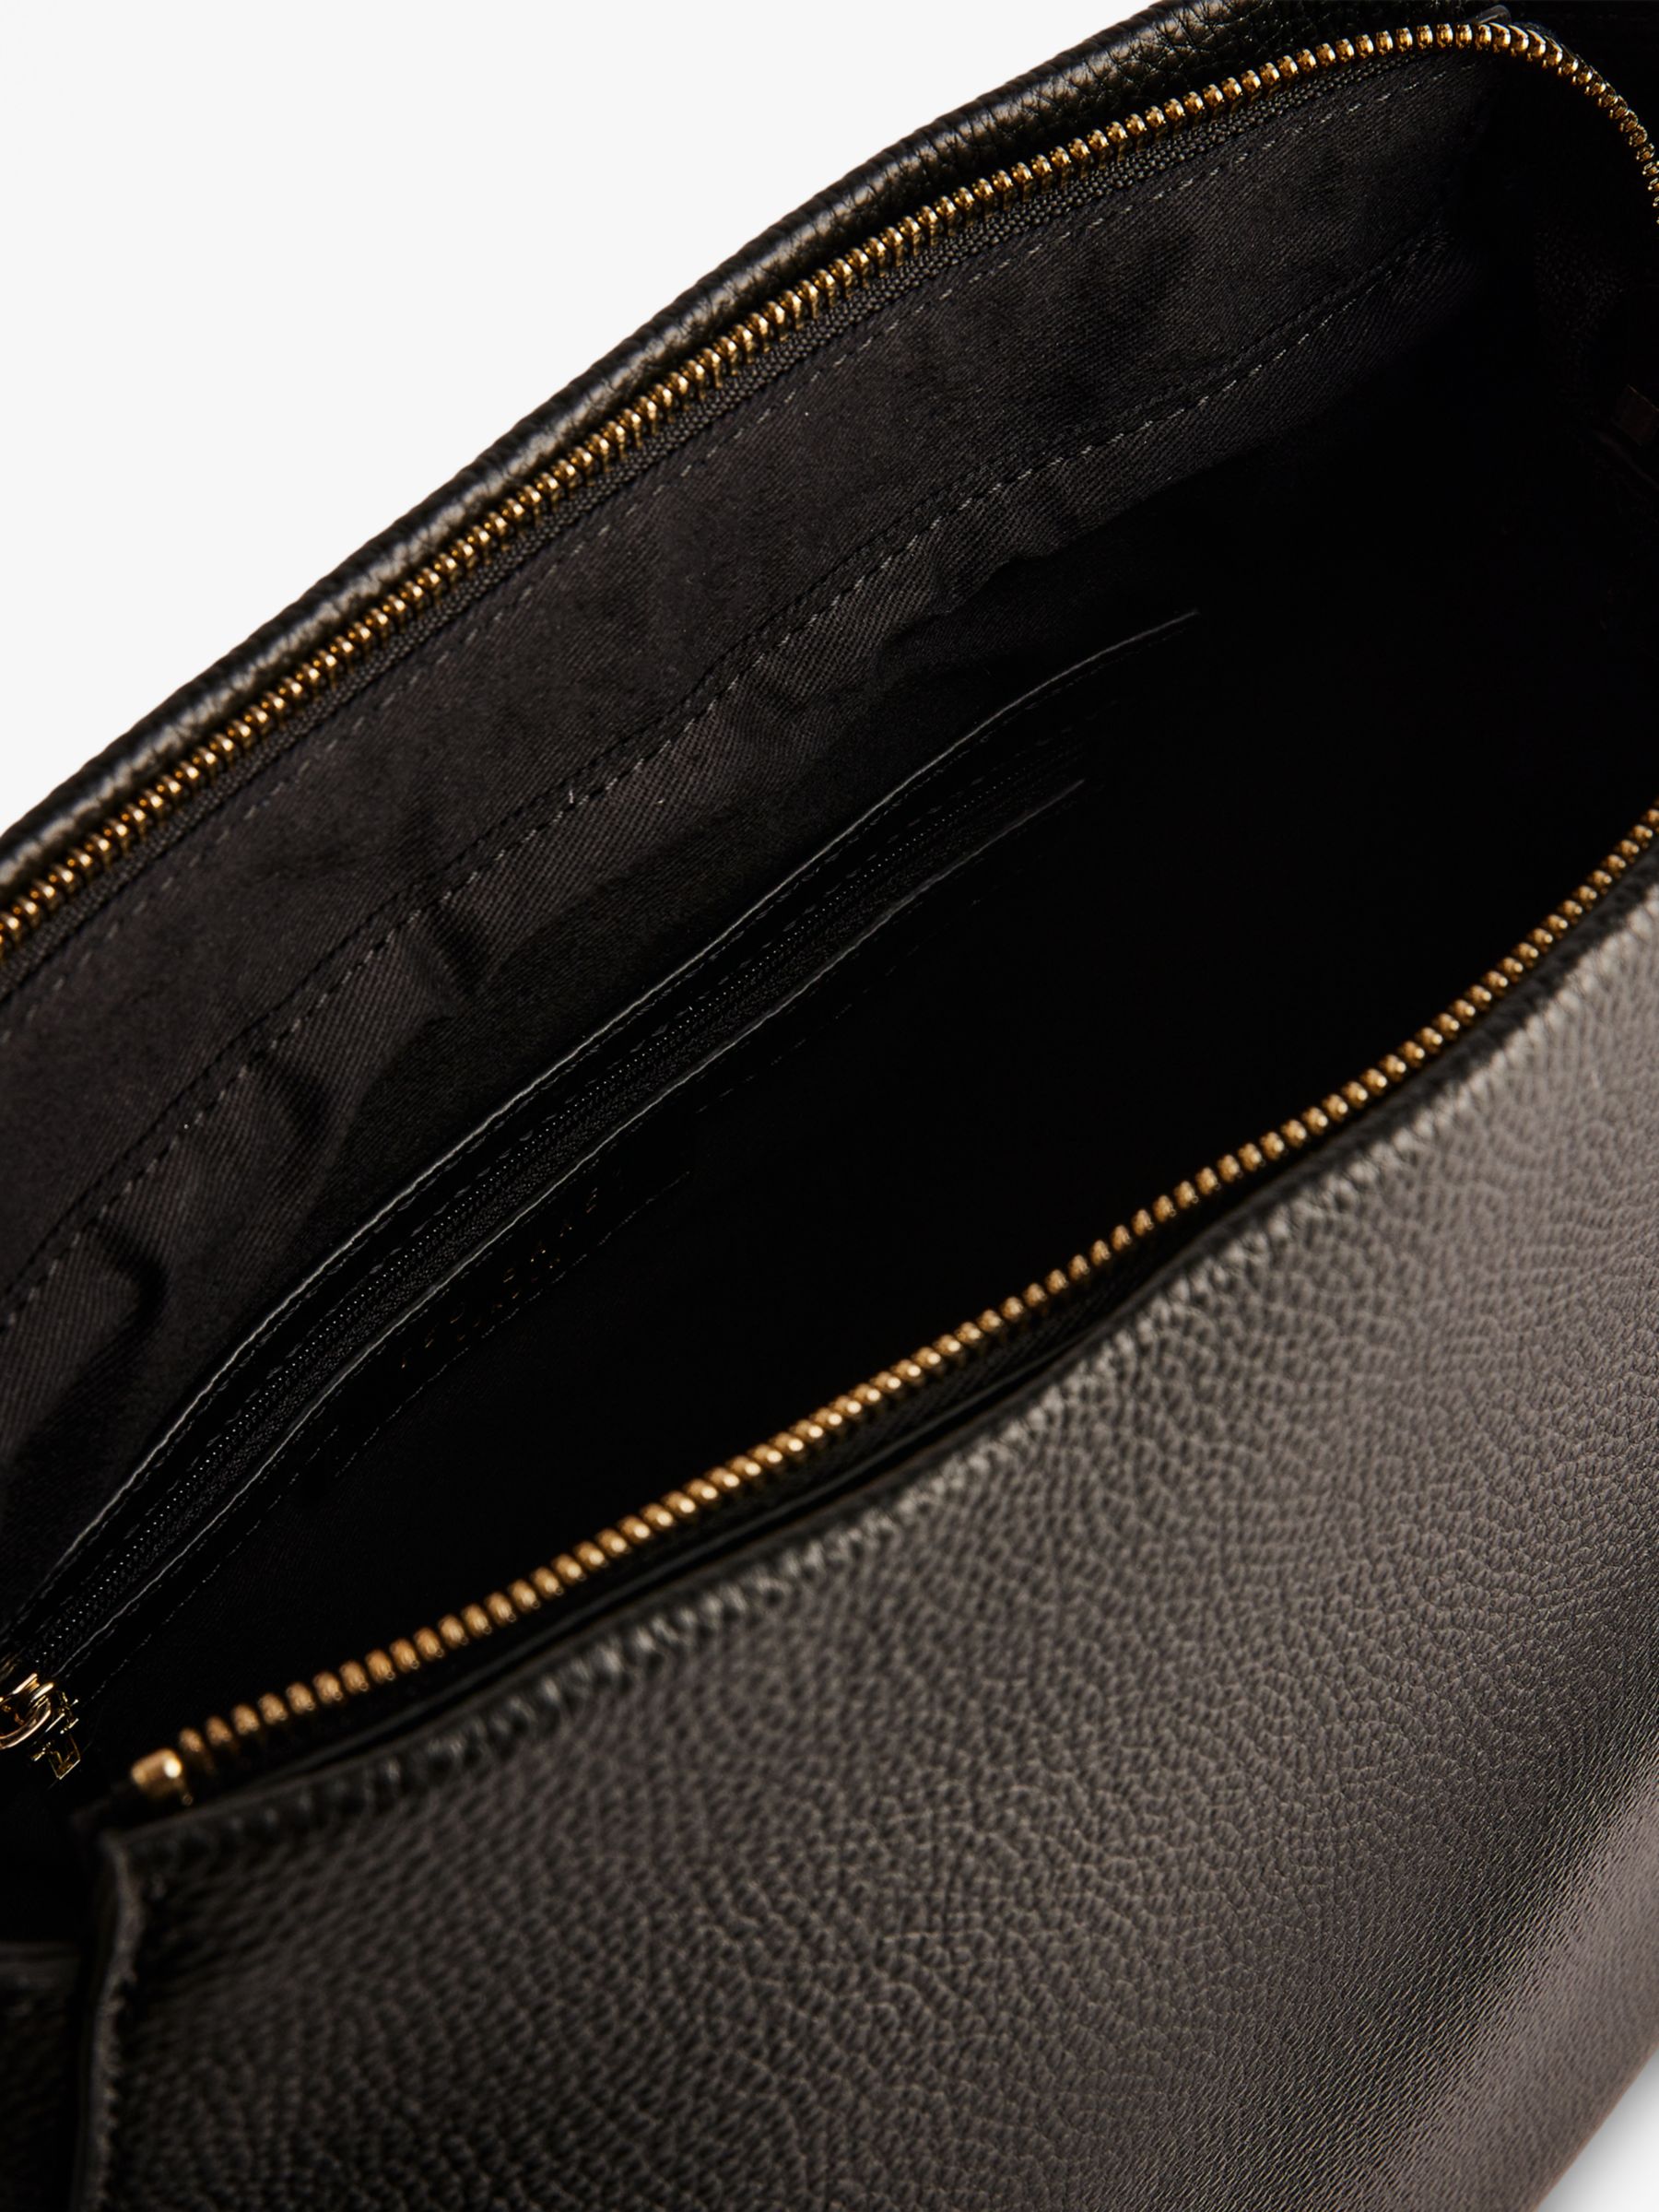 Ted Baker Darciel Branded Webbing Leather Hobo Bag, Black, One Size